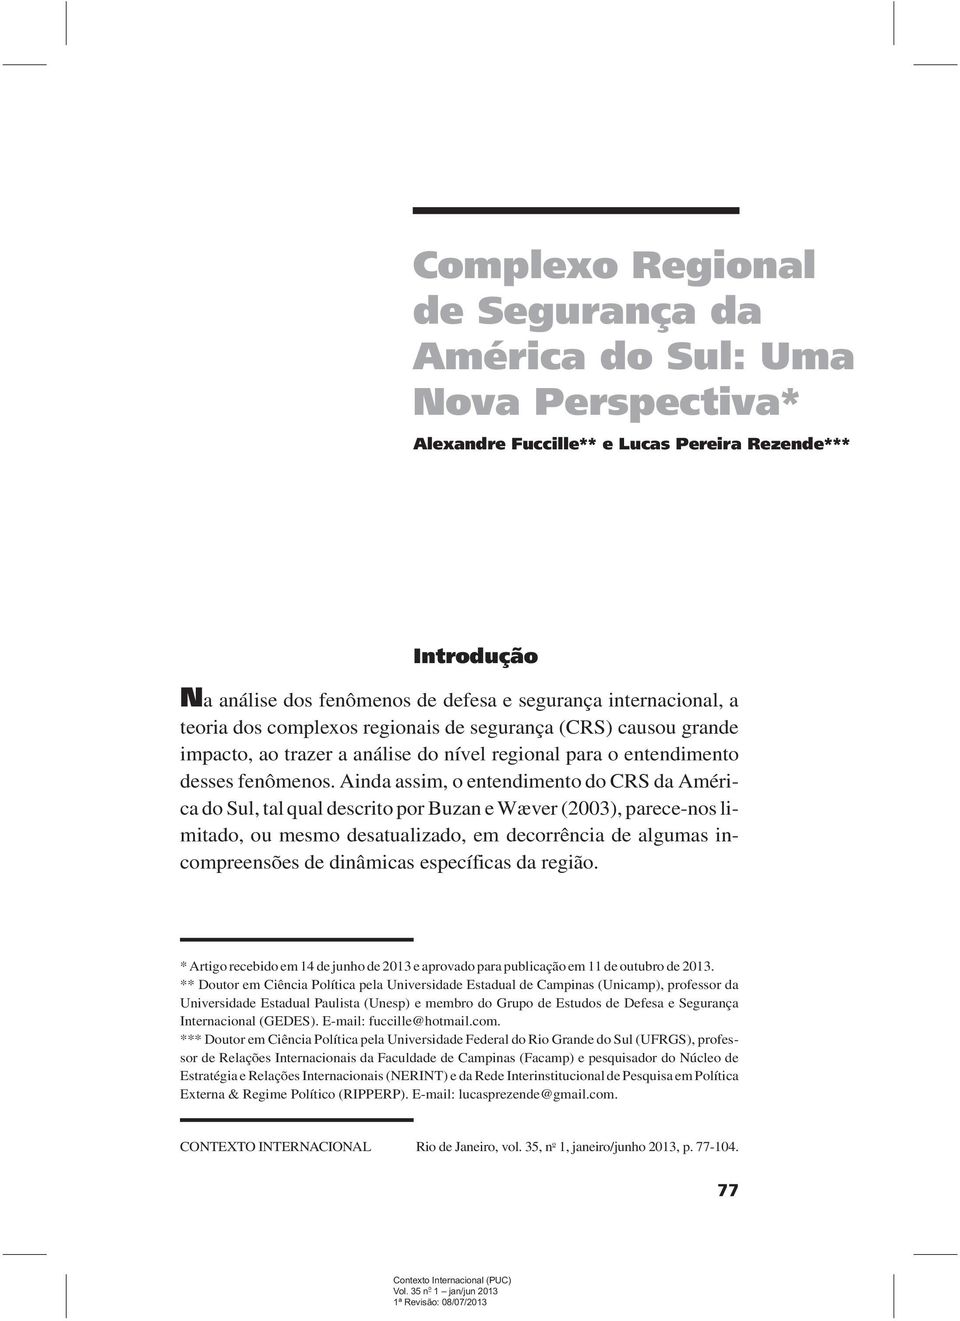 Ainda assim, o entendimento do CRS da América do Sul, tal qual descrito por Buzan e Wæver (2003), parece-nos limitado, ou mesmo desatualizado, em decorrência de algumas incompreensões de dinâmicas